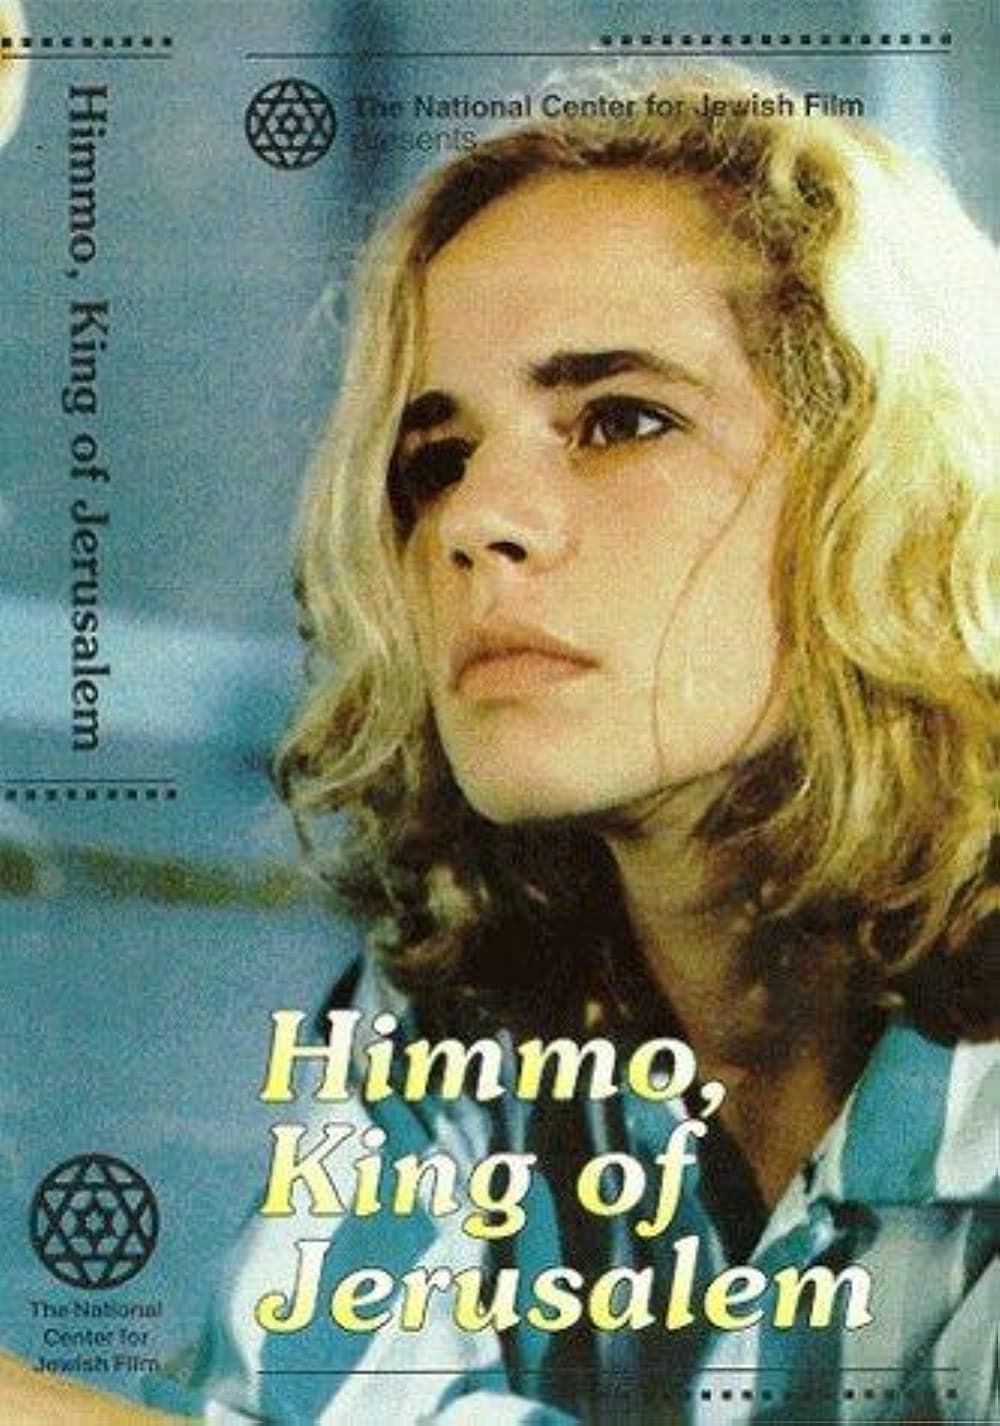 Himmo, King of Jerusalem